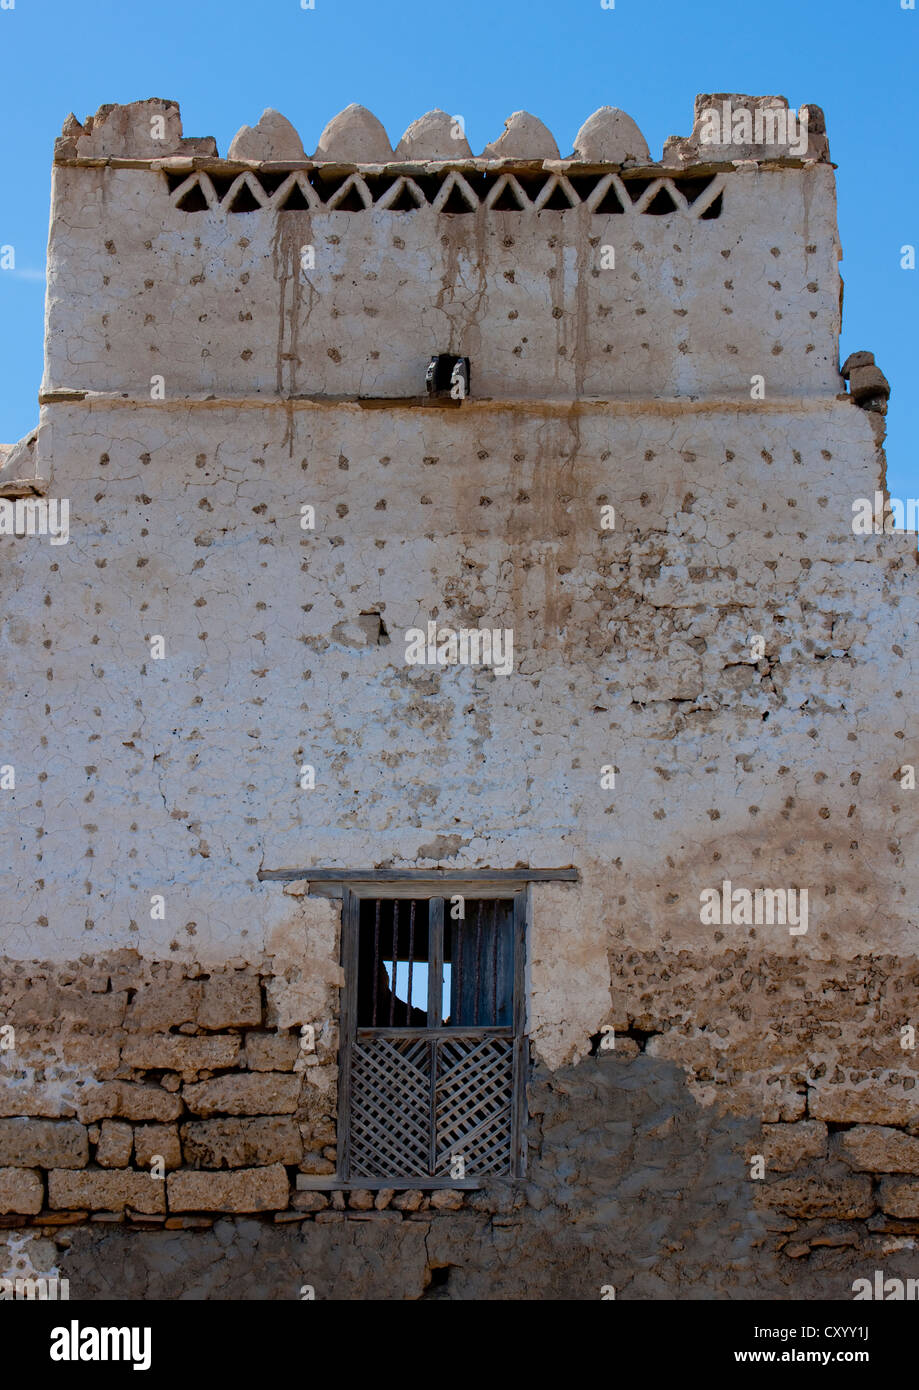 La facciata della lacuna con una scappatoia, Mirbat, Oman Foto Stock